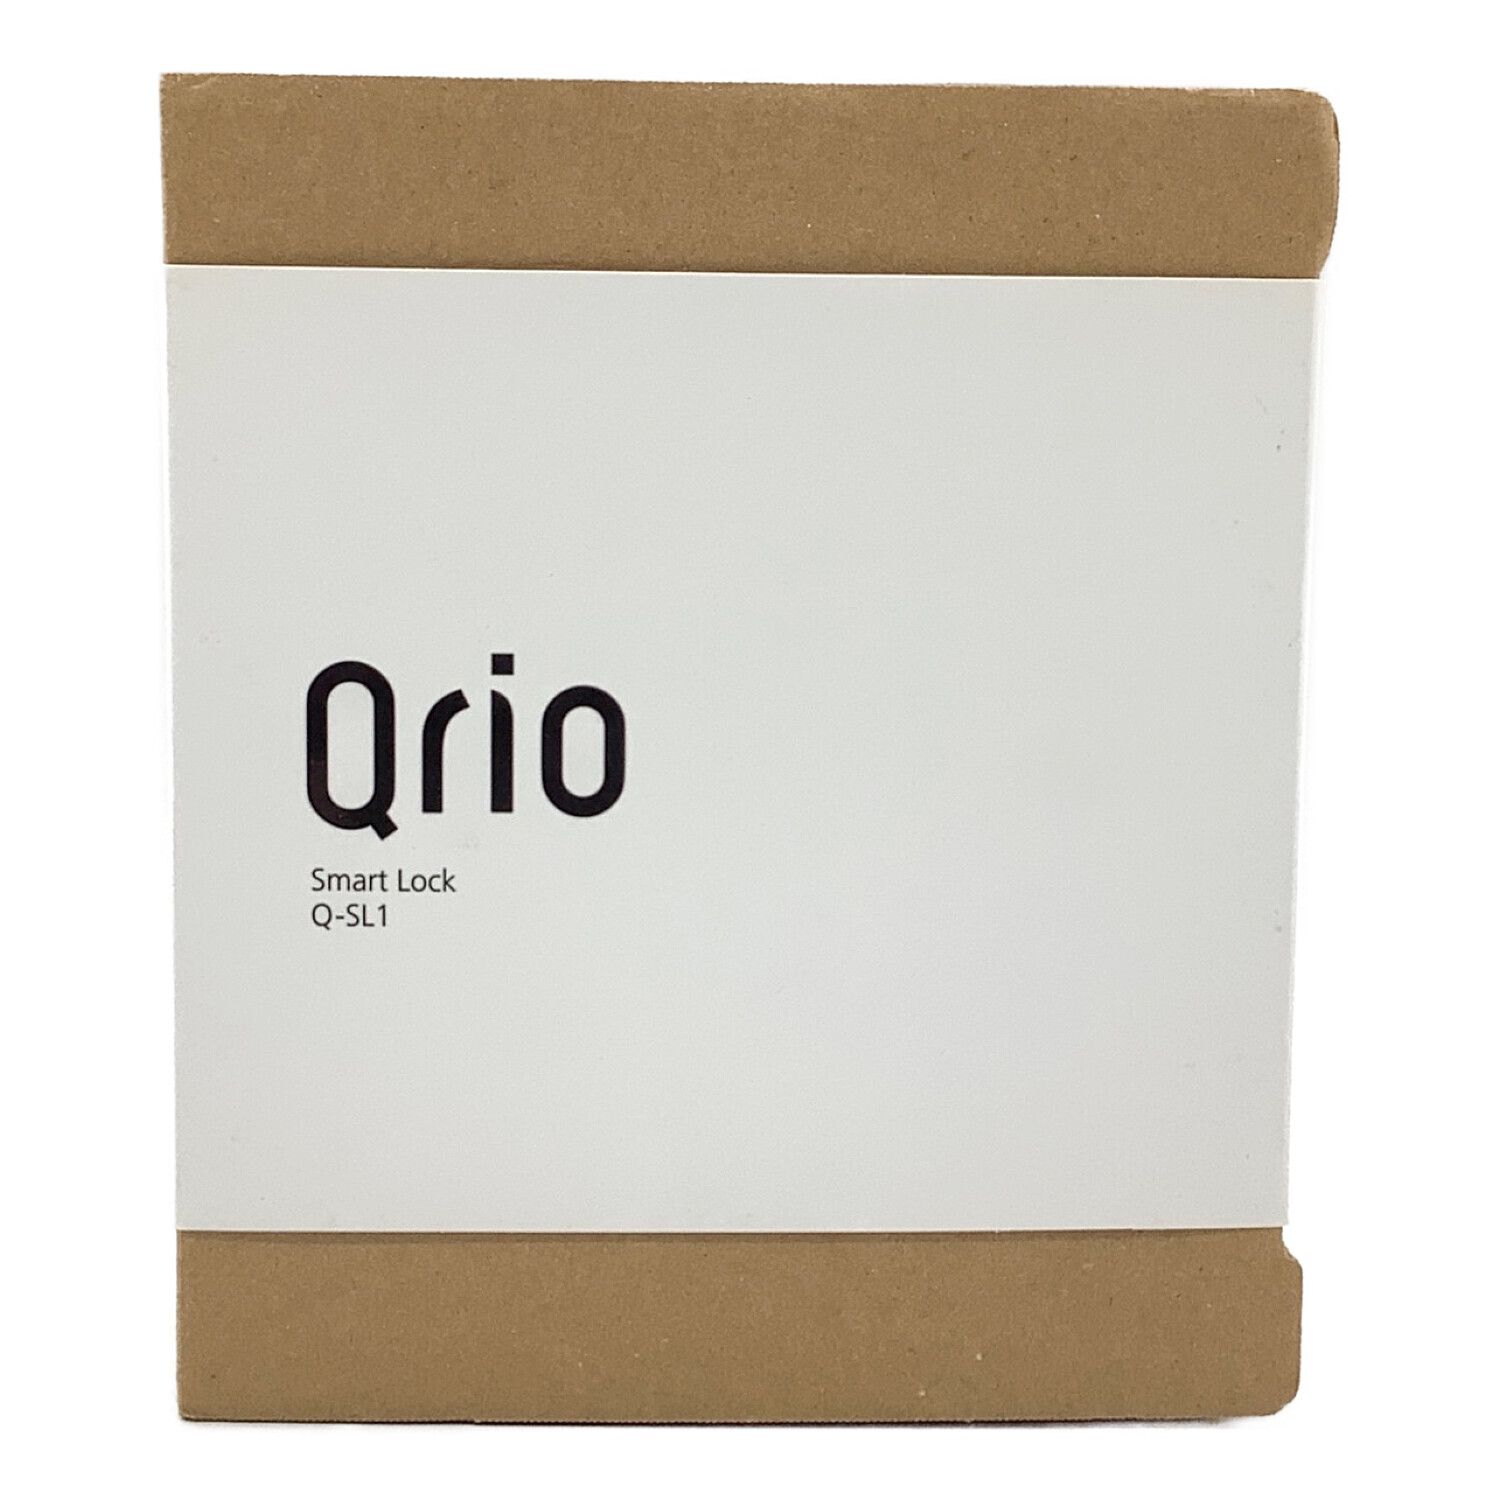 Qrio Q-SL1